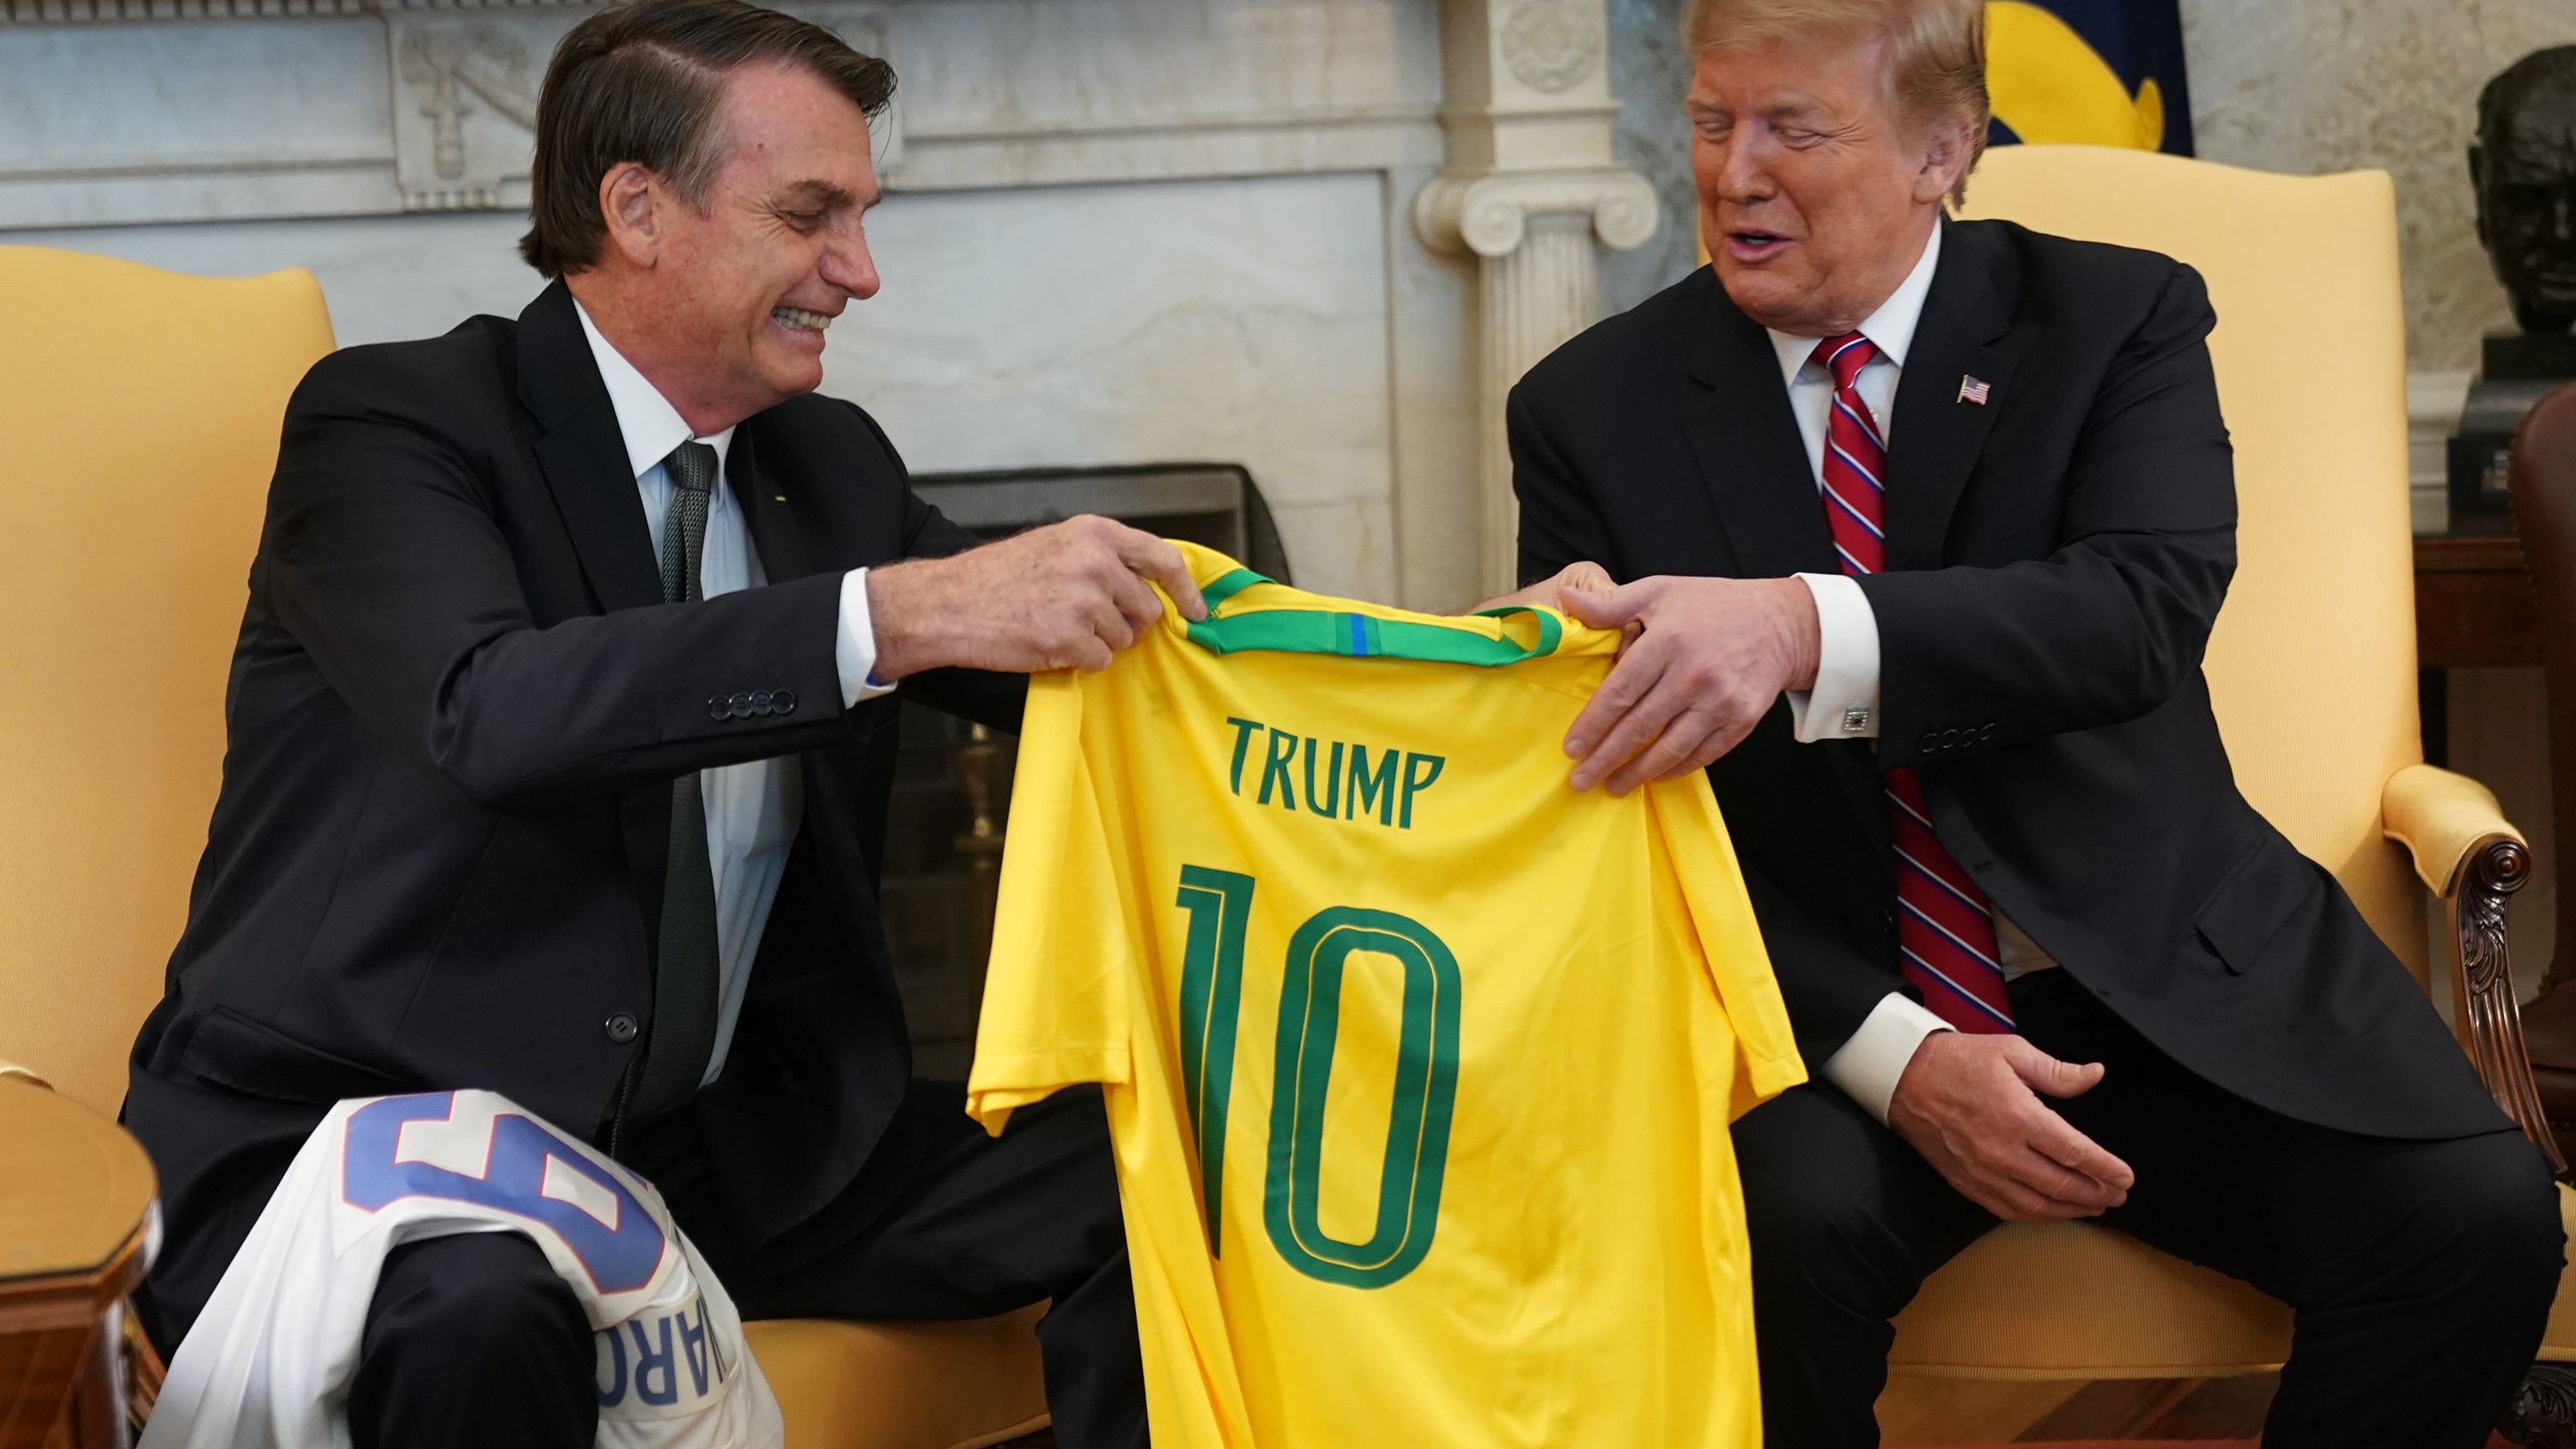 Brezilya Devlet Başkanı Jair Bolsonaro, 19 Mart 2019'da Washington DC'deki Beyaz Saray'da ABD Başkanı Donald Trump'a Brezilya milli takım forması hediye etti.